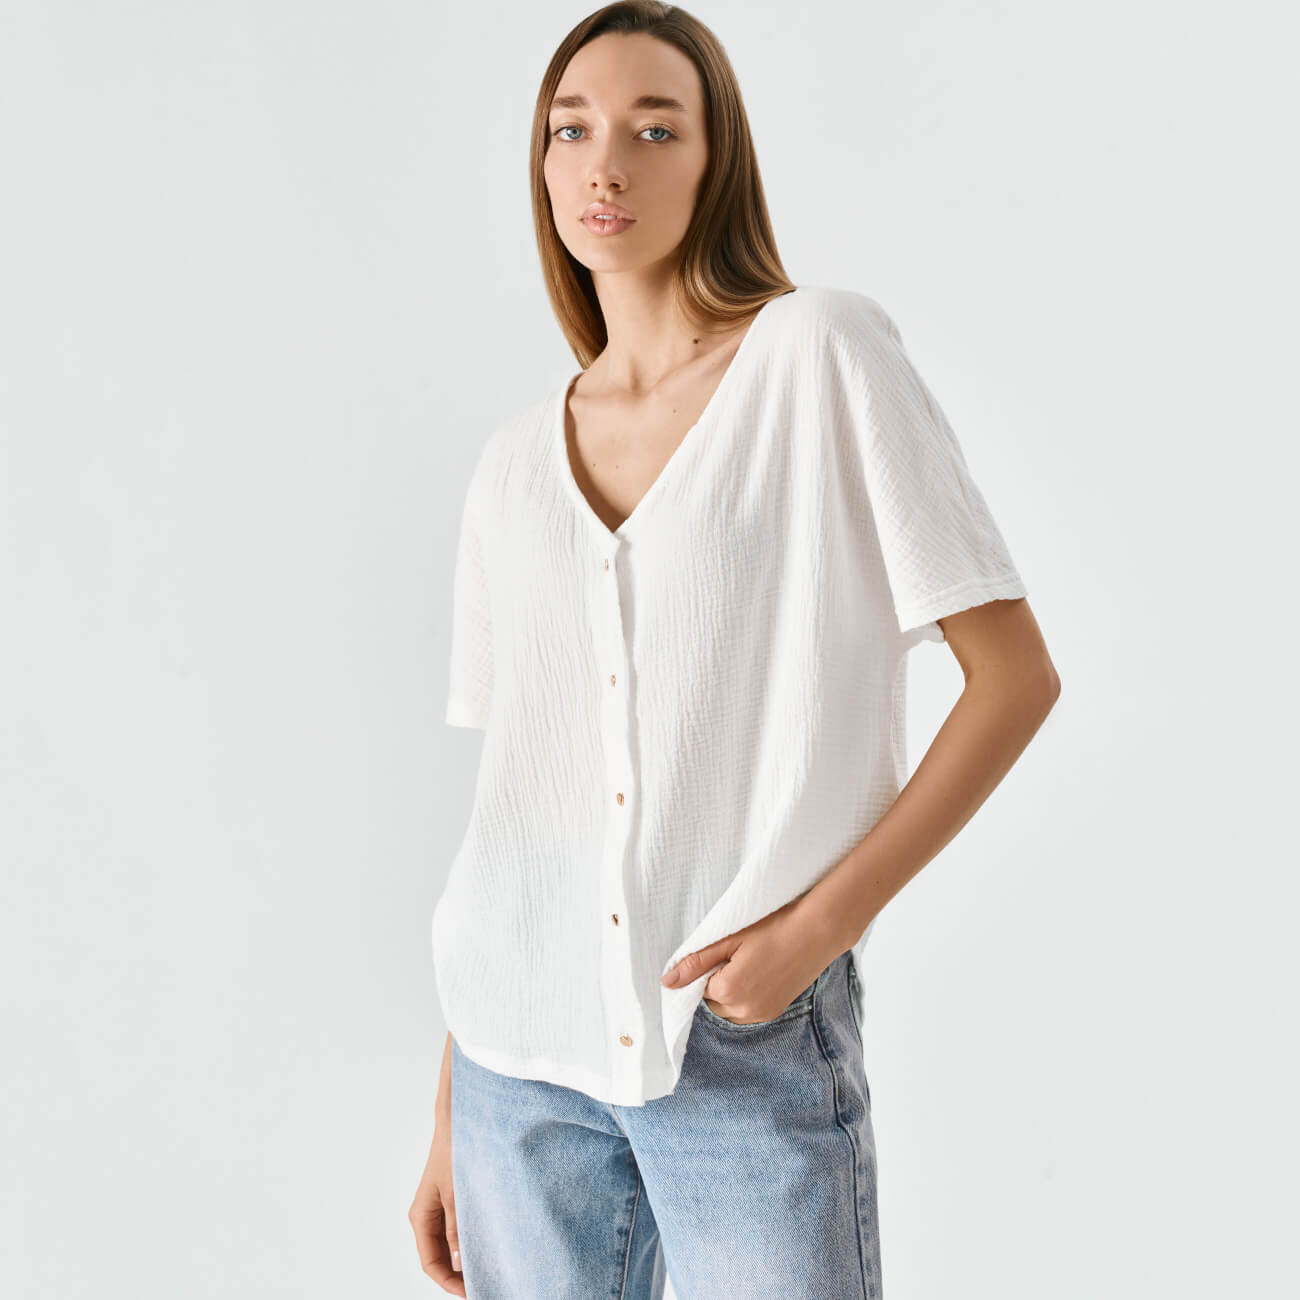 Рубашка женская, р. XL, с коротким рукавом, муслин, белая, Allison боди с коротким рукавом basic рост 80 см сиреневый